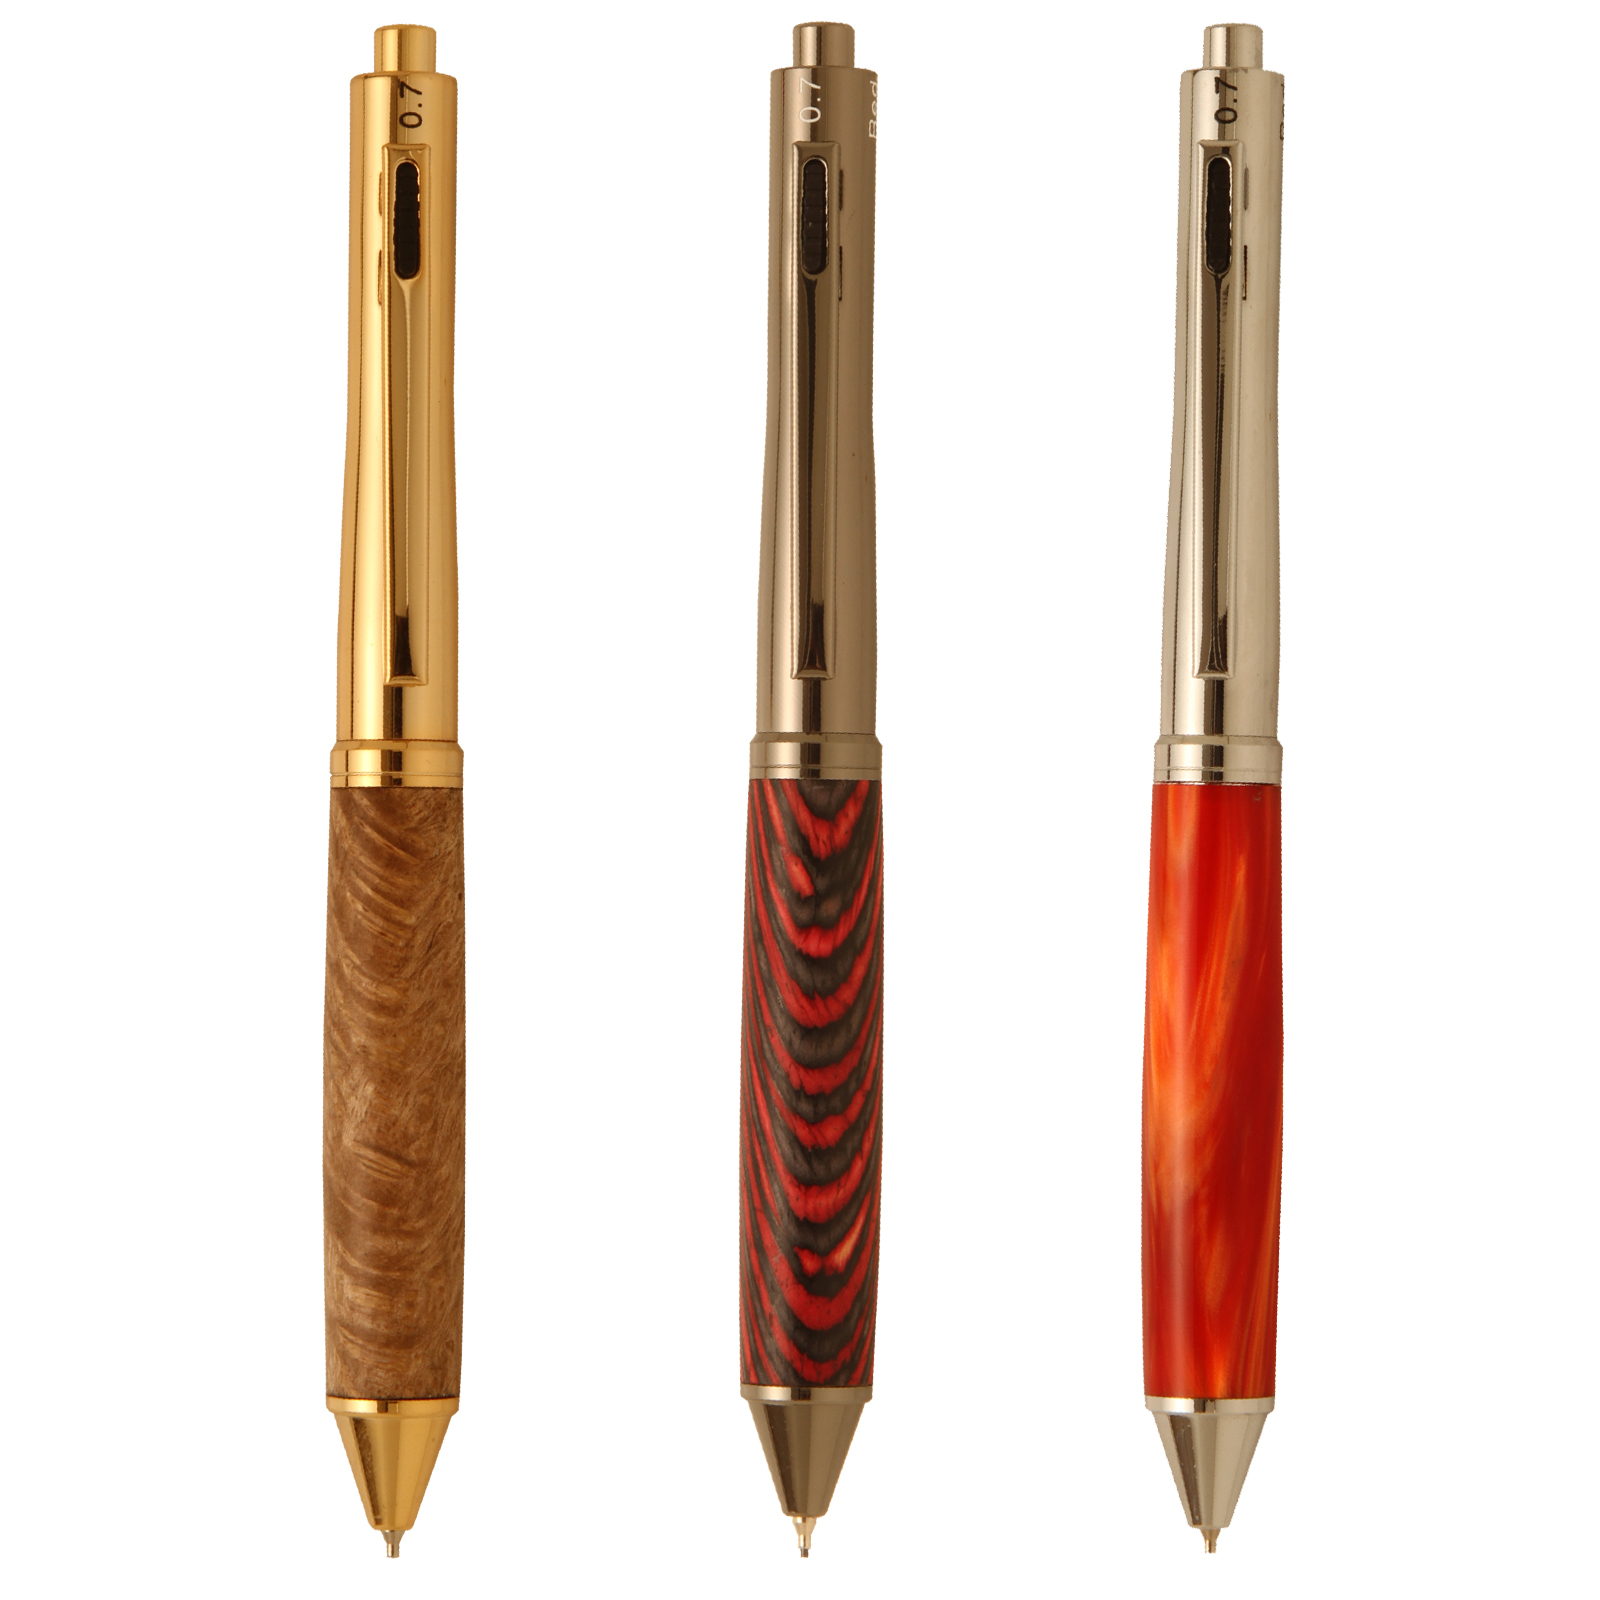 2 pen set with storage pouch Philadelphia Phillies Wood Click Pen 